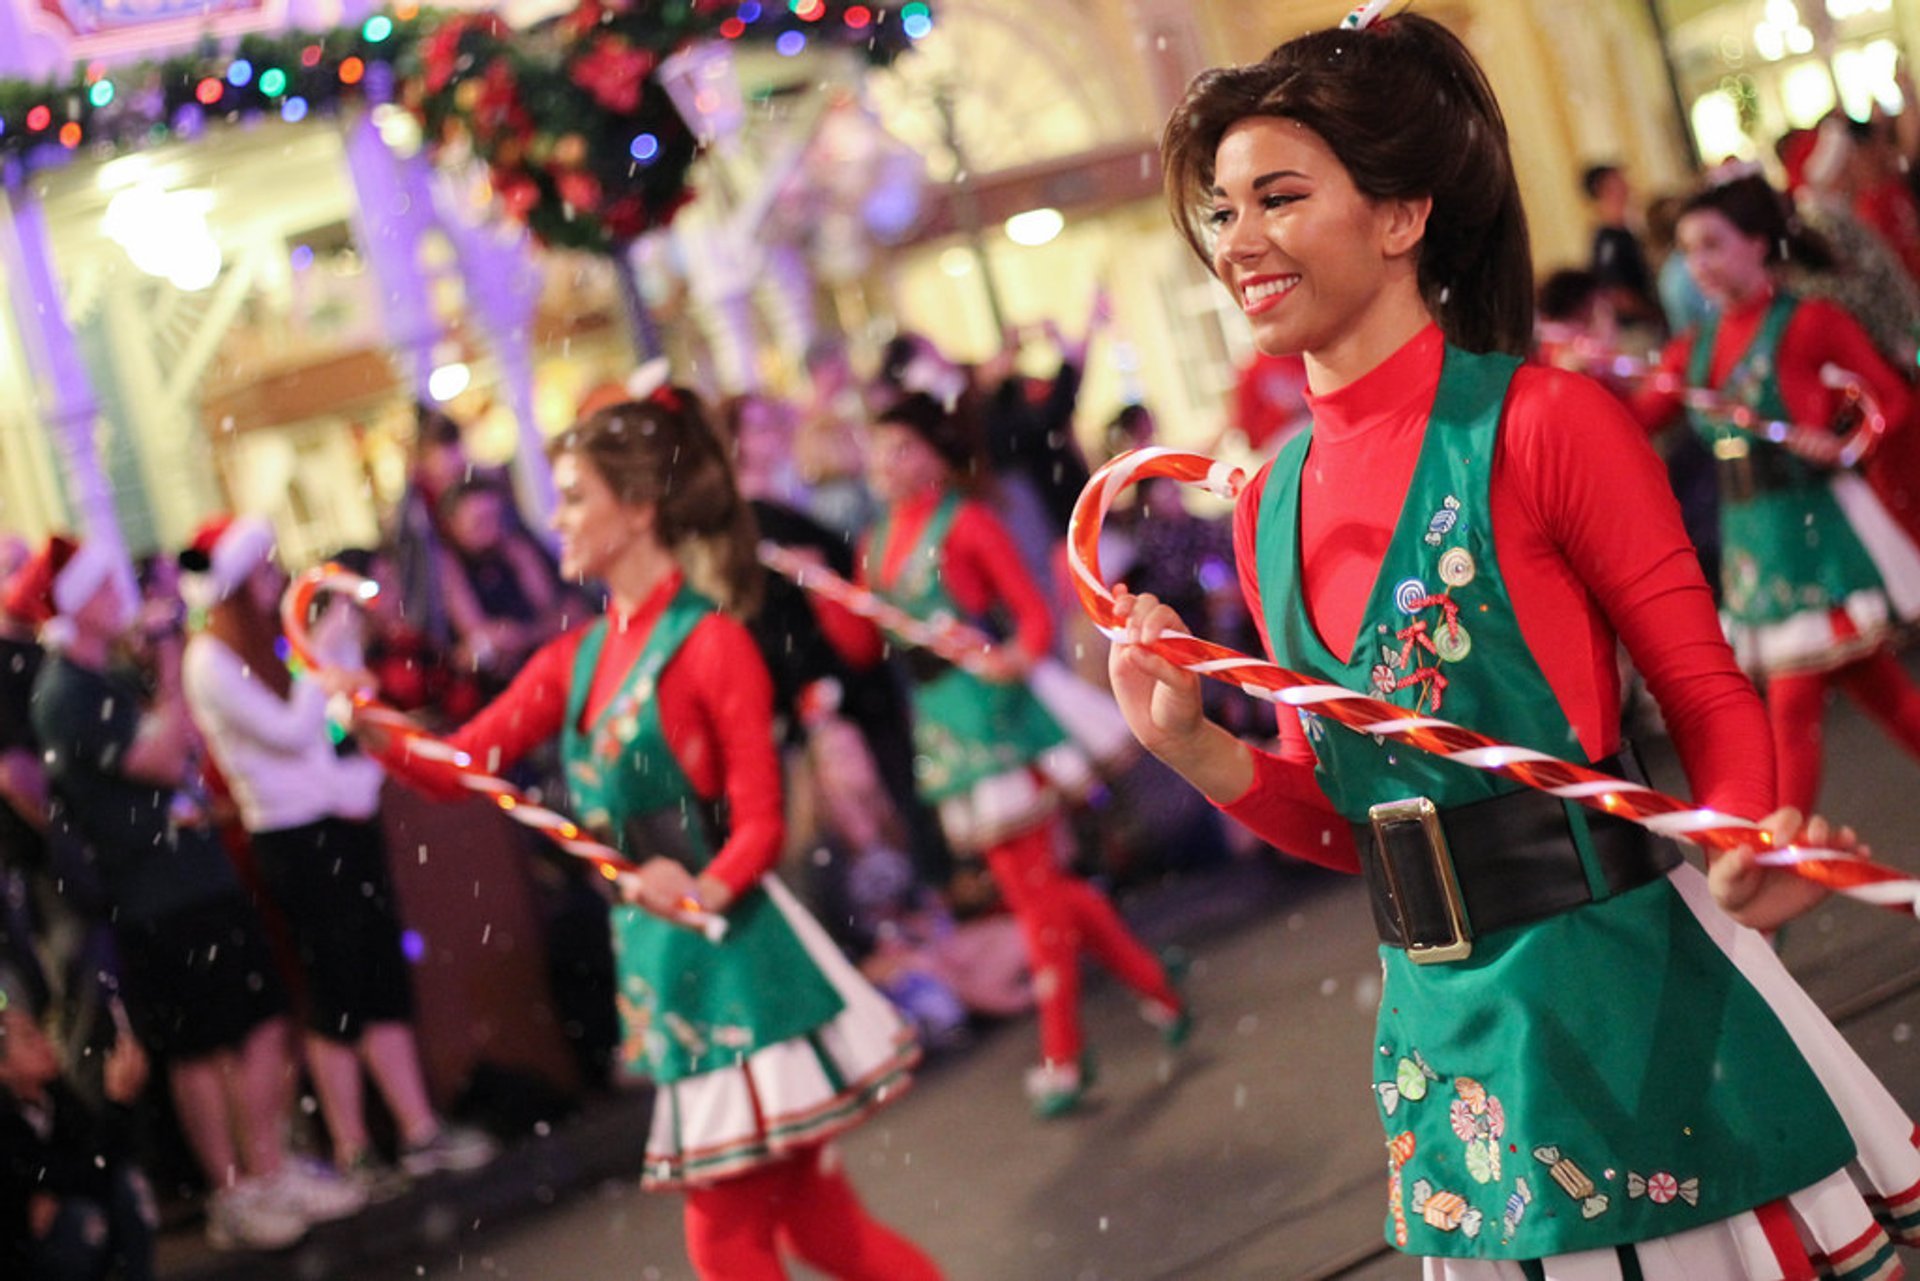 Christmas Holiday Magic at Disney World